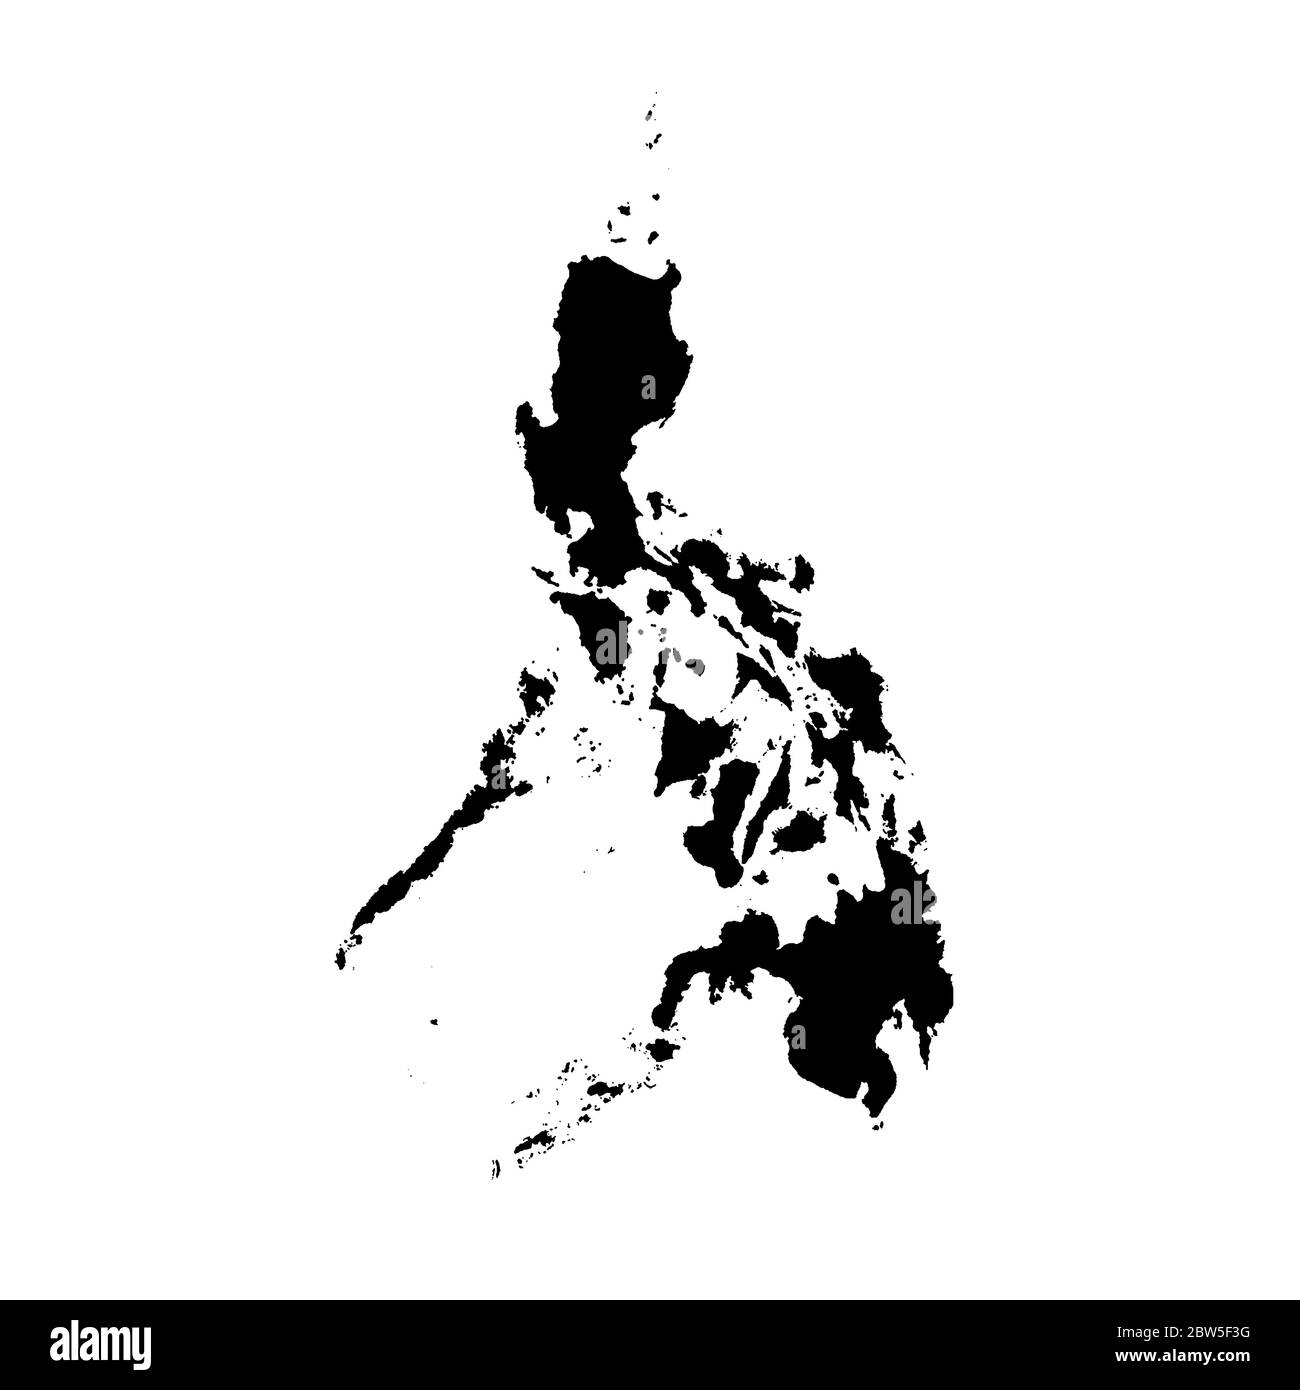 Vektorkarte Philippinen. Isolierte Vektorgrafik. Schwarz auf weißem Hintergrund. EPS 10-Abbildung. Stock Vektor